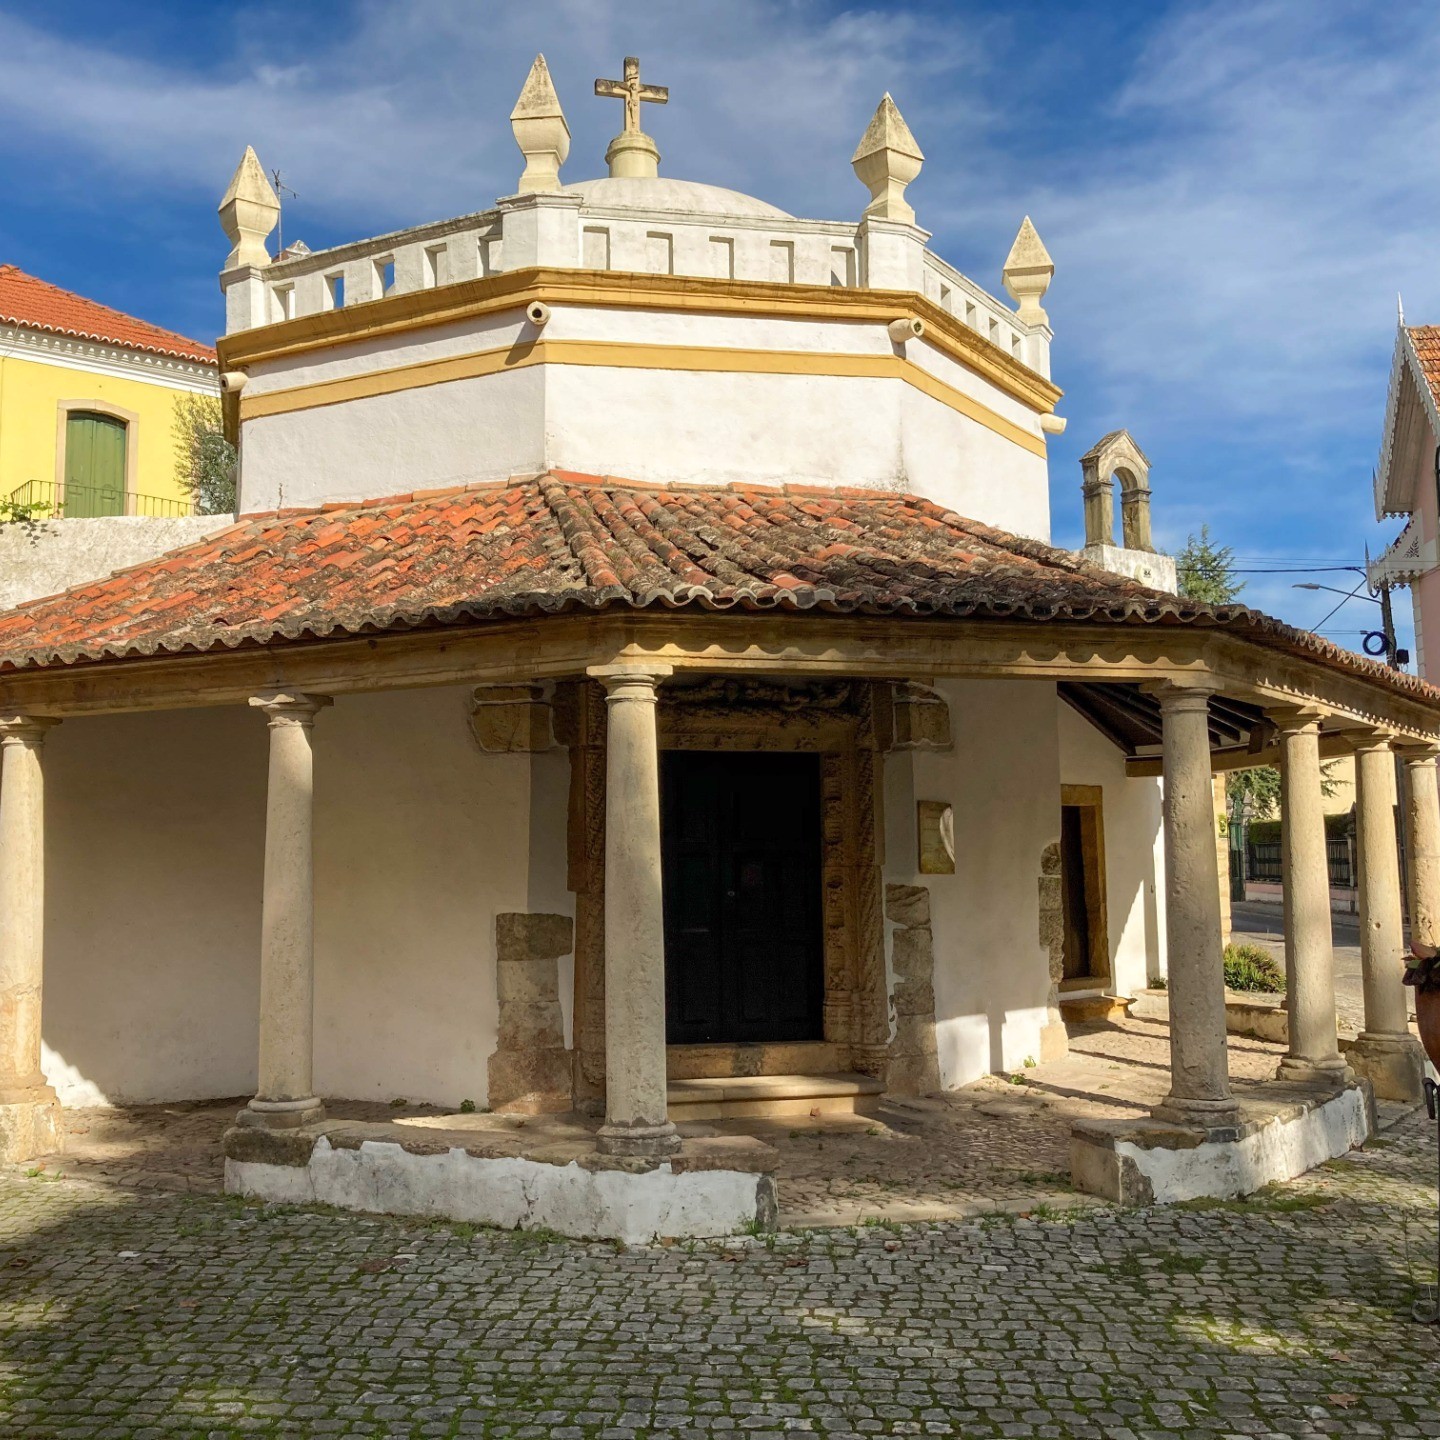 Capela - Pequeno santuário de construção quinhentista, planta central e estrutura octogonal no corpo principal do templo, rematada por uma cúpula de estilo renascentista.